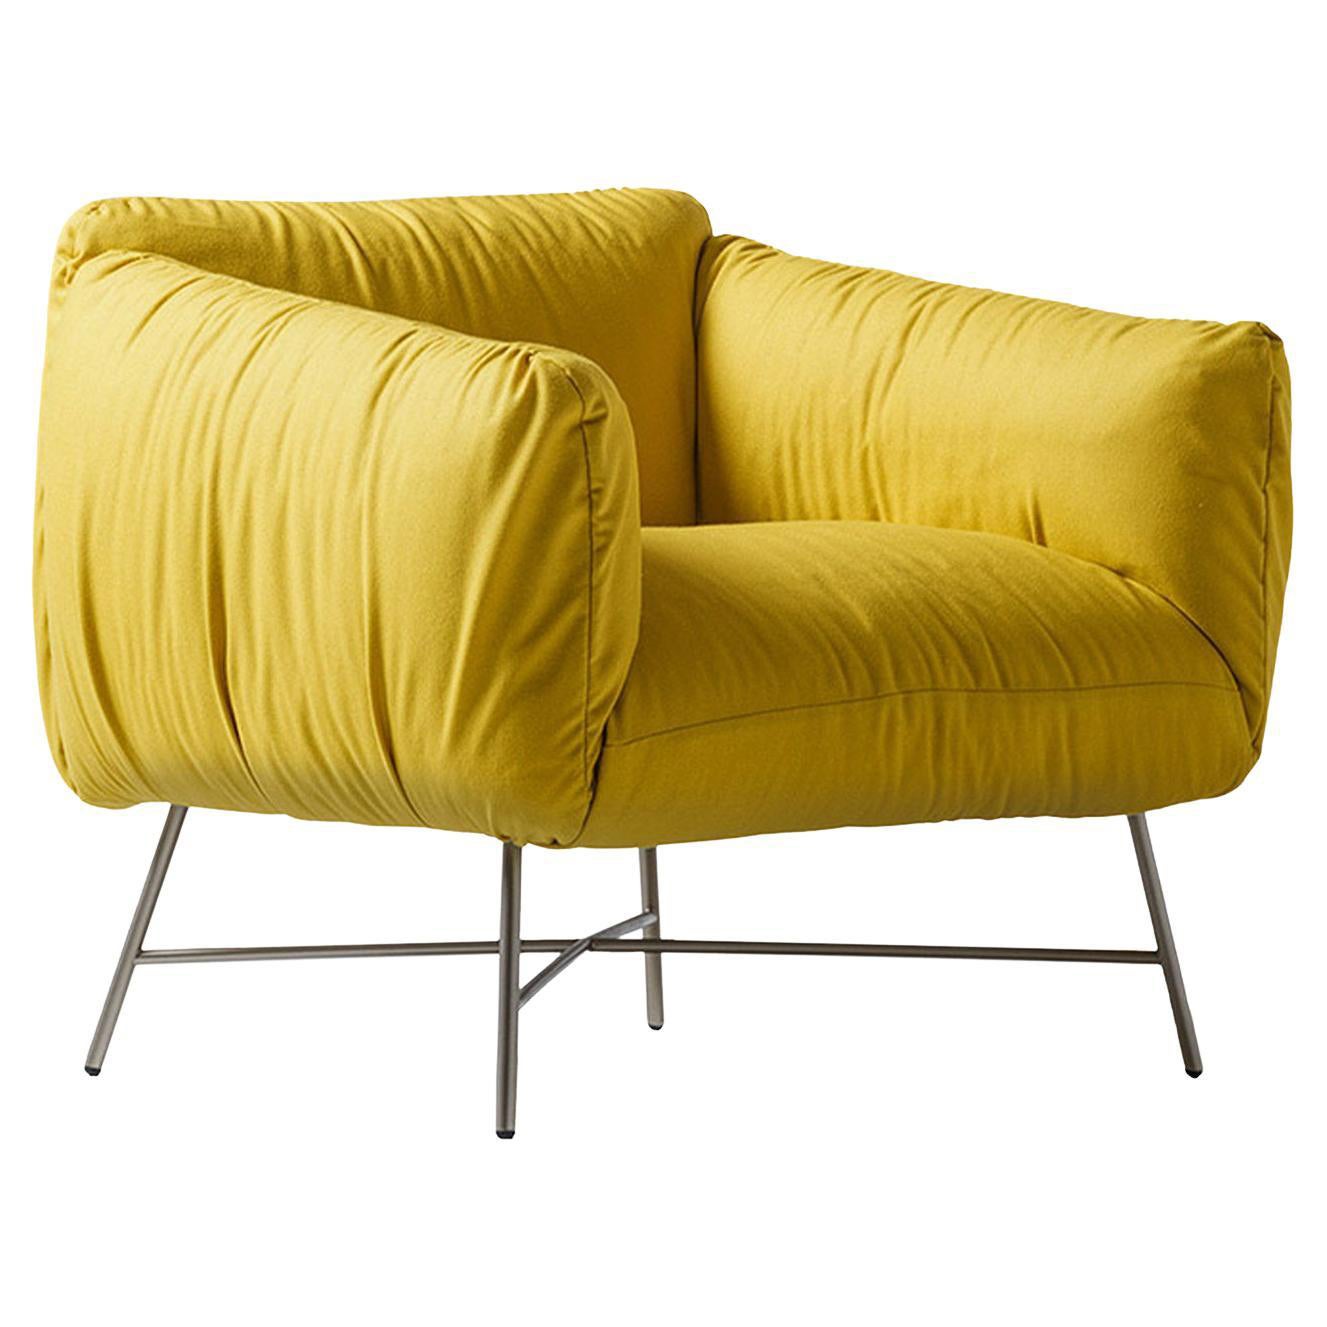 Jolie Yellow Armchair by Angeletti Ruzza